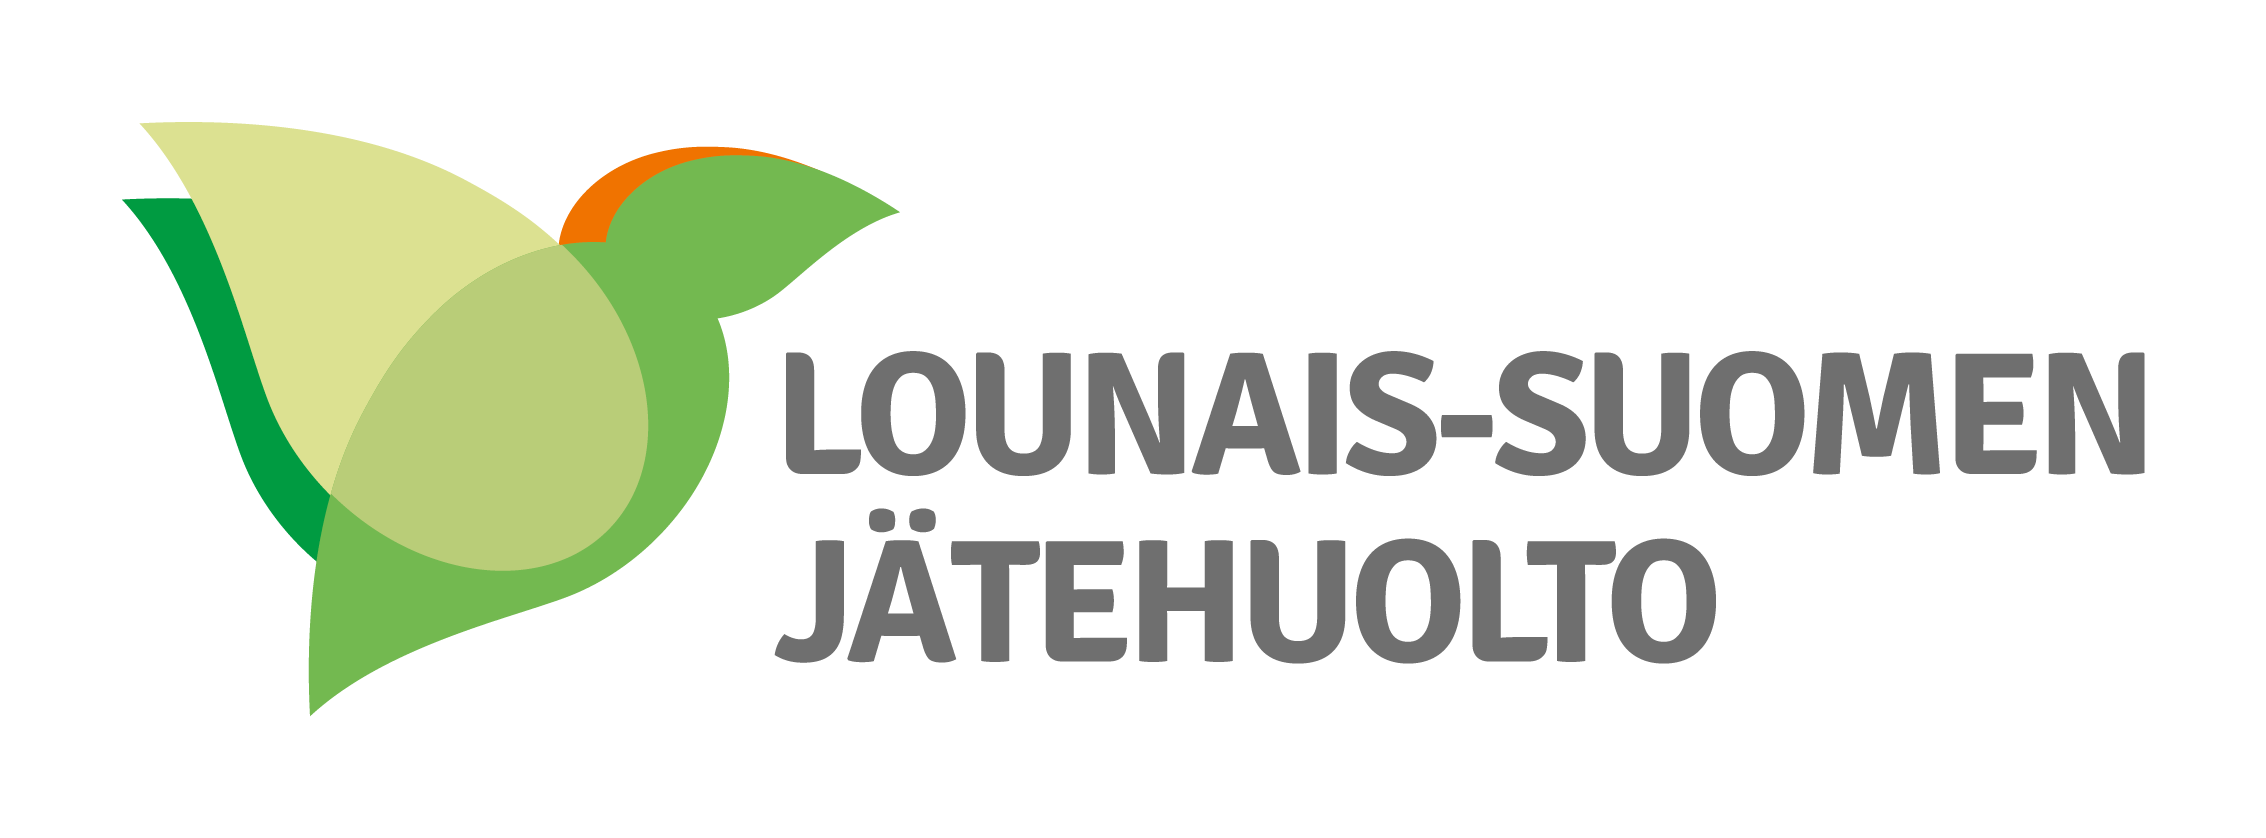 Lounais-Suomen Jätehuolto logo